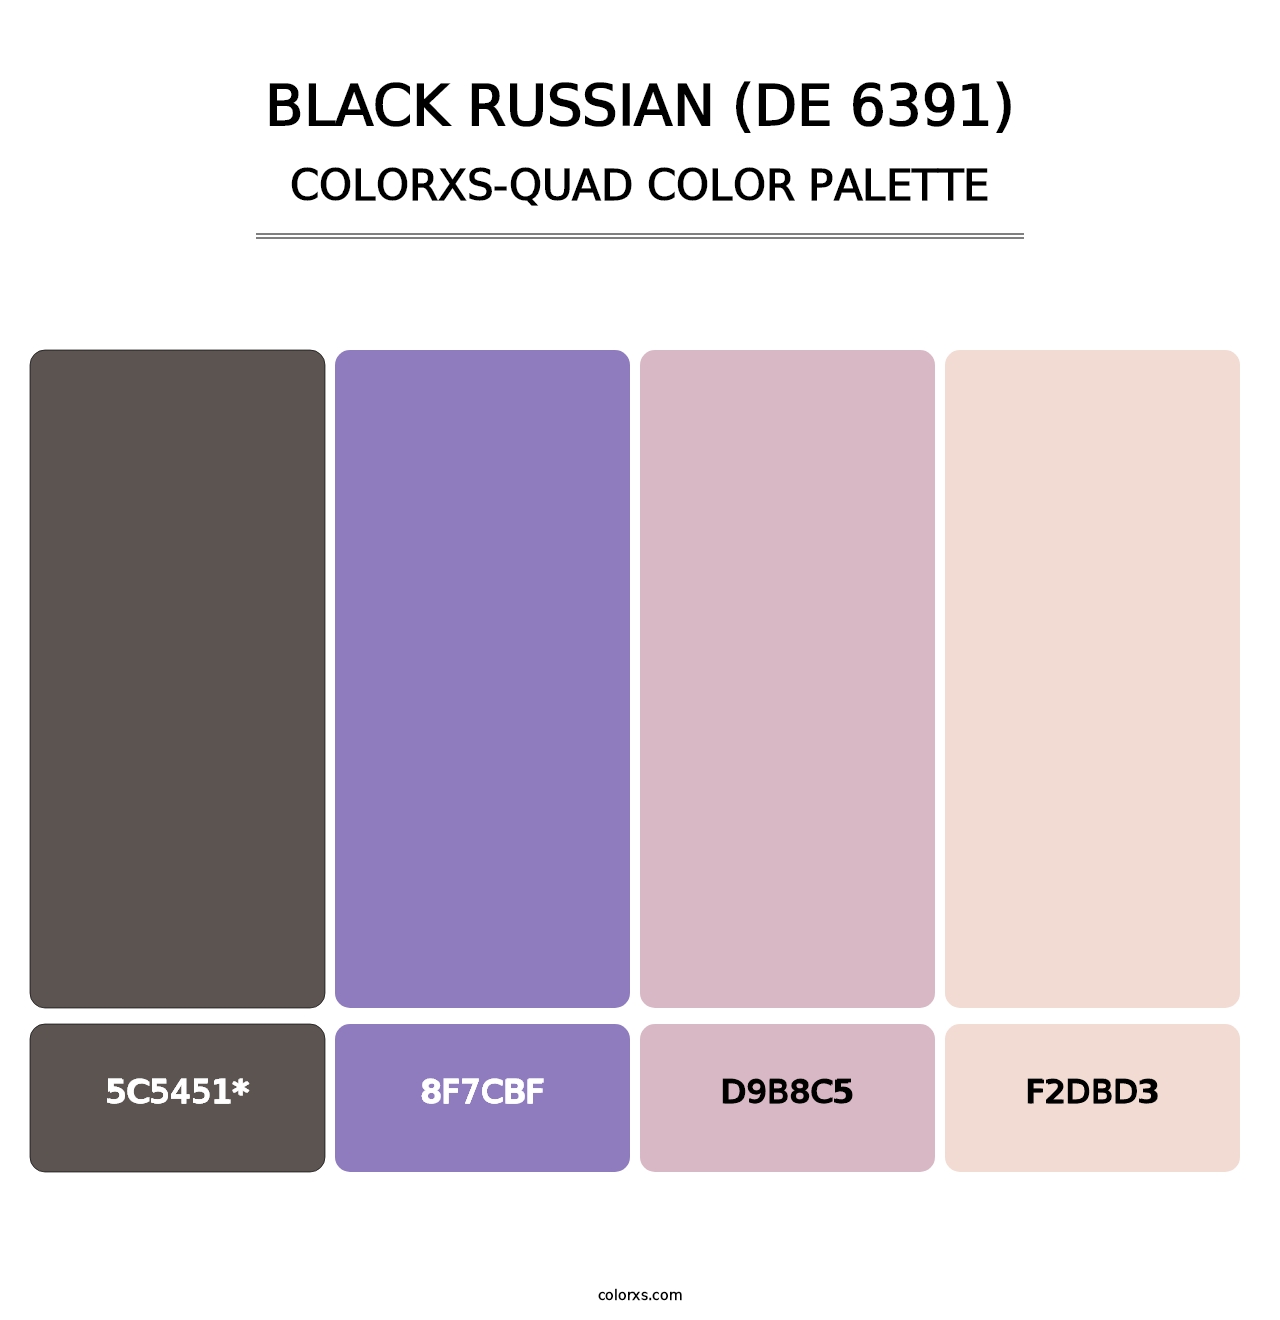 Black Russian (DE 6391) - Colorxs Quad Palette